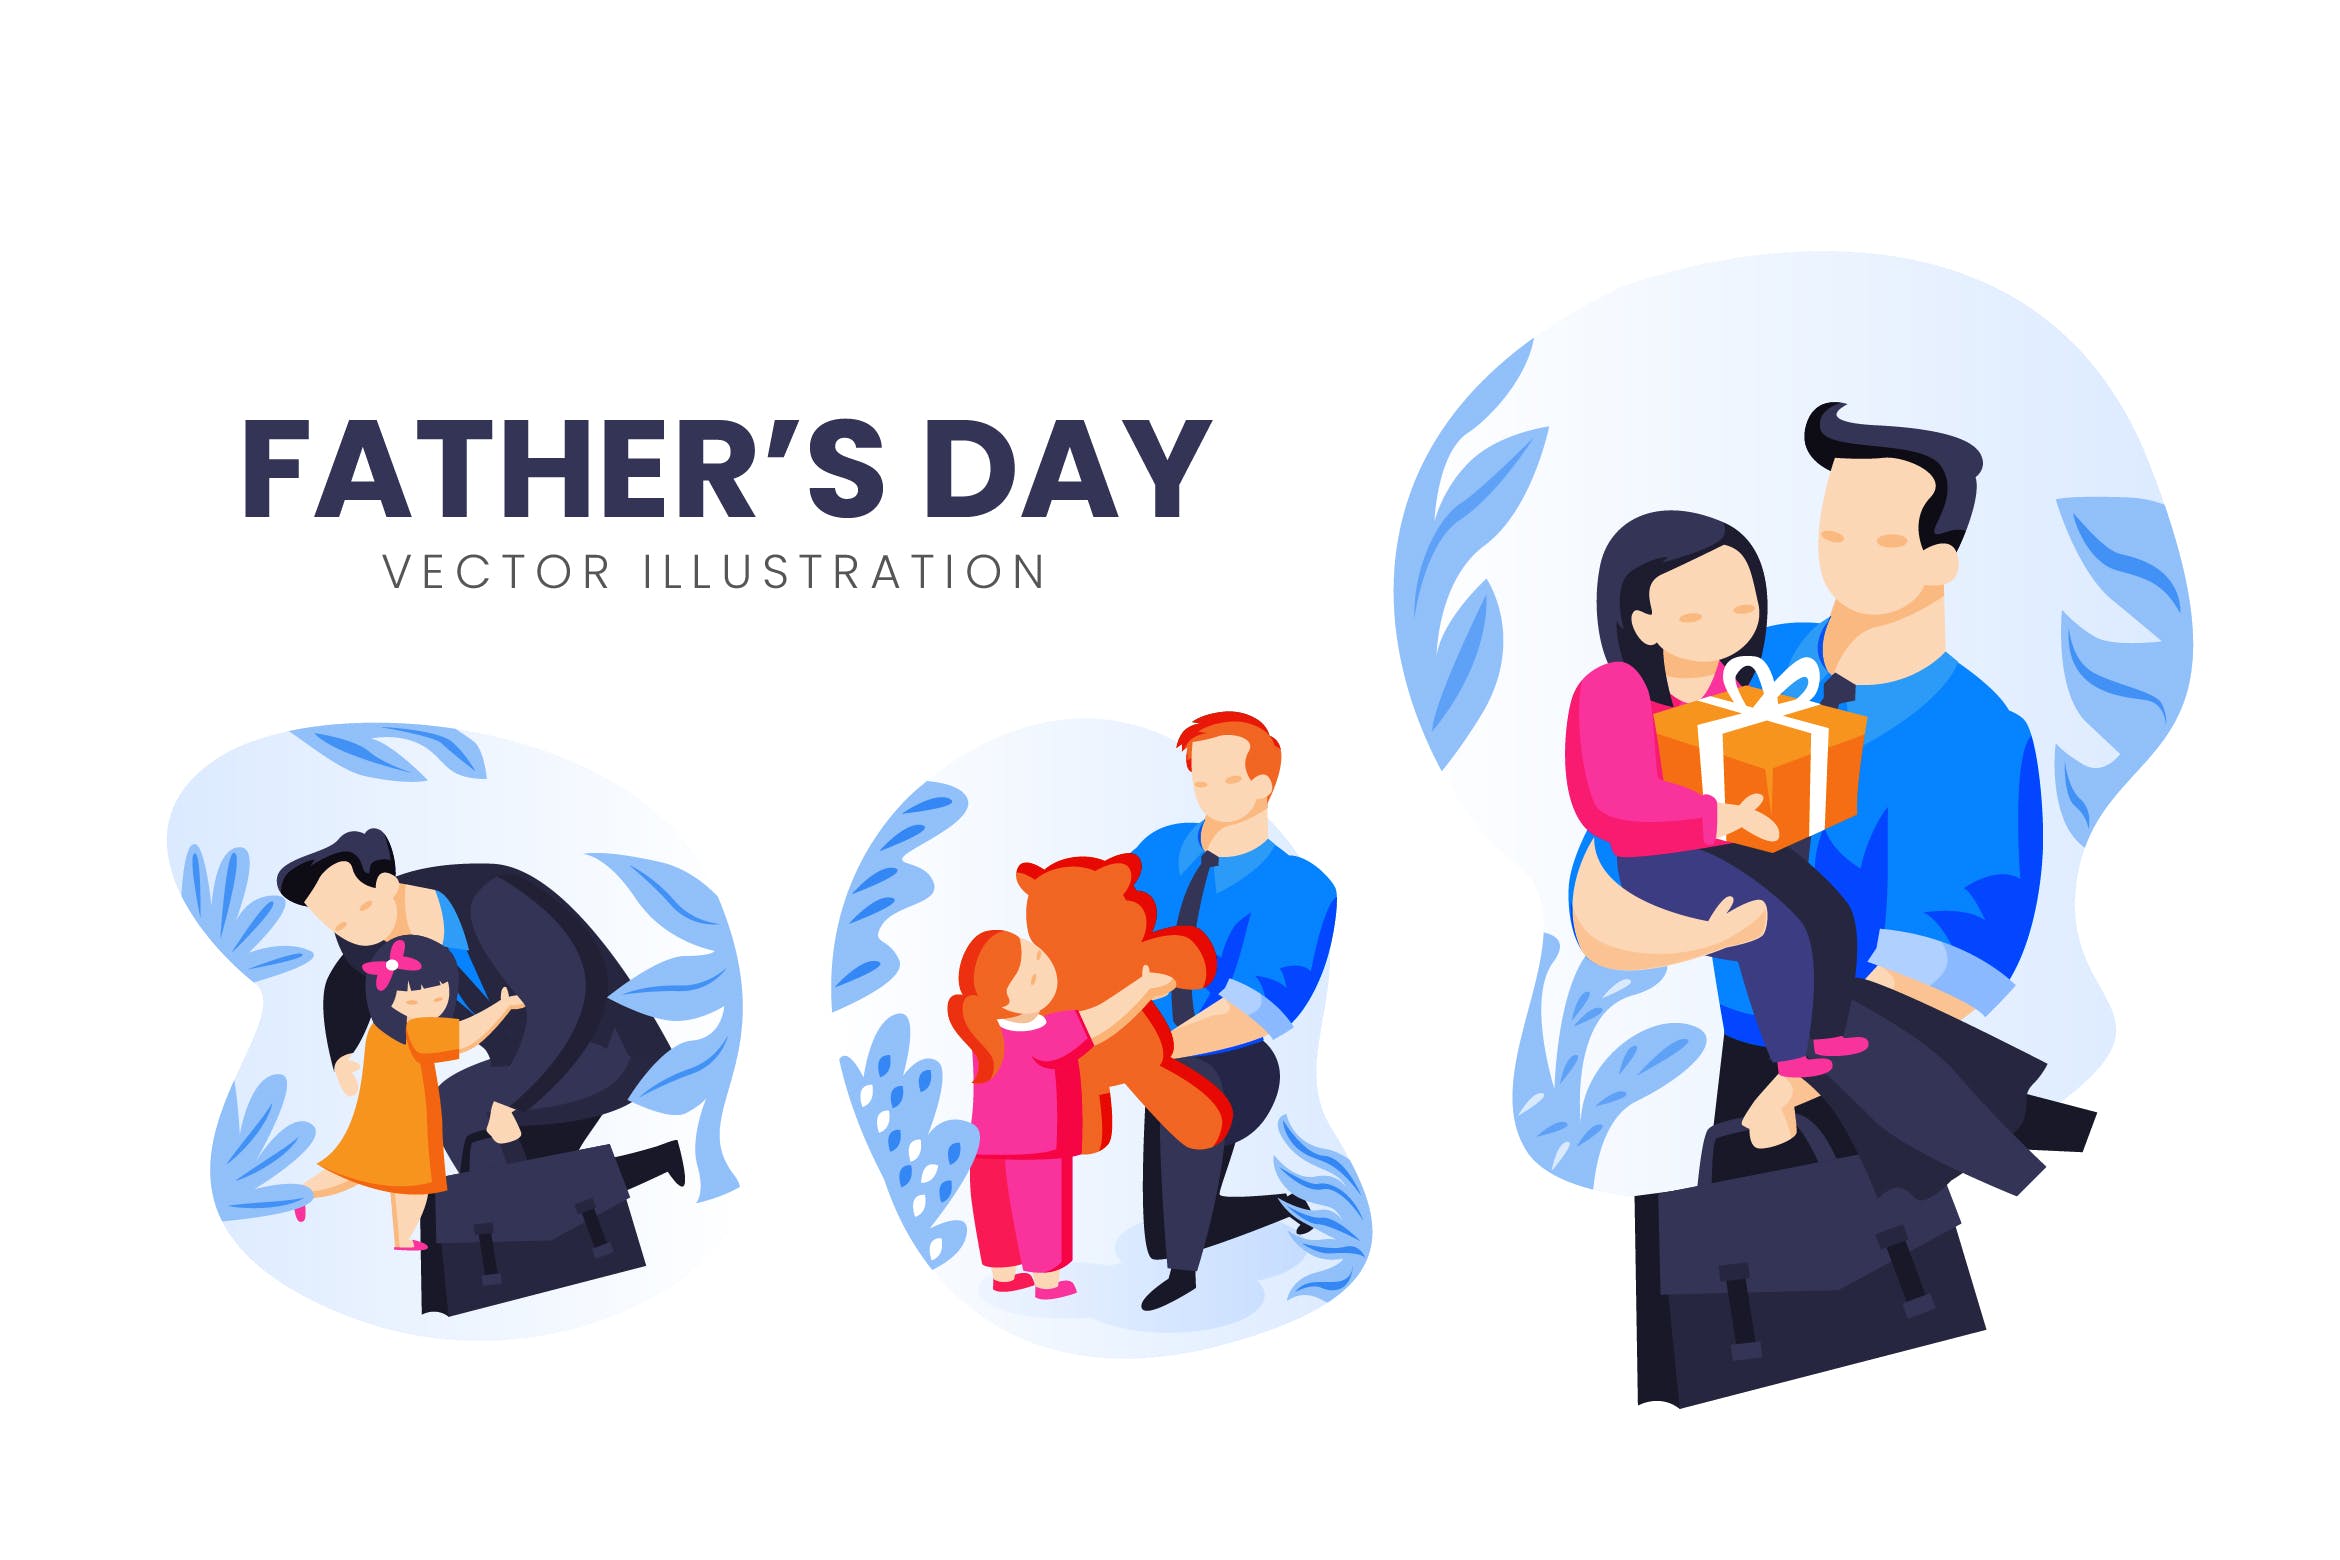 父亲节主题人物形象普贤居精选手绘插画矢量素材 Fathers Day Vector Character Set插图